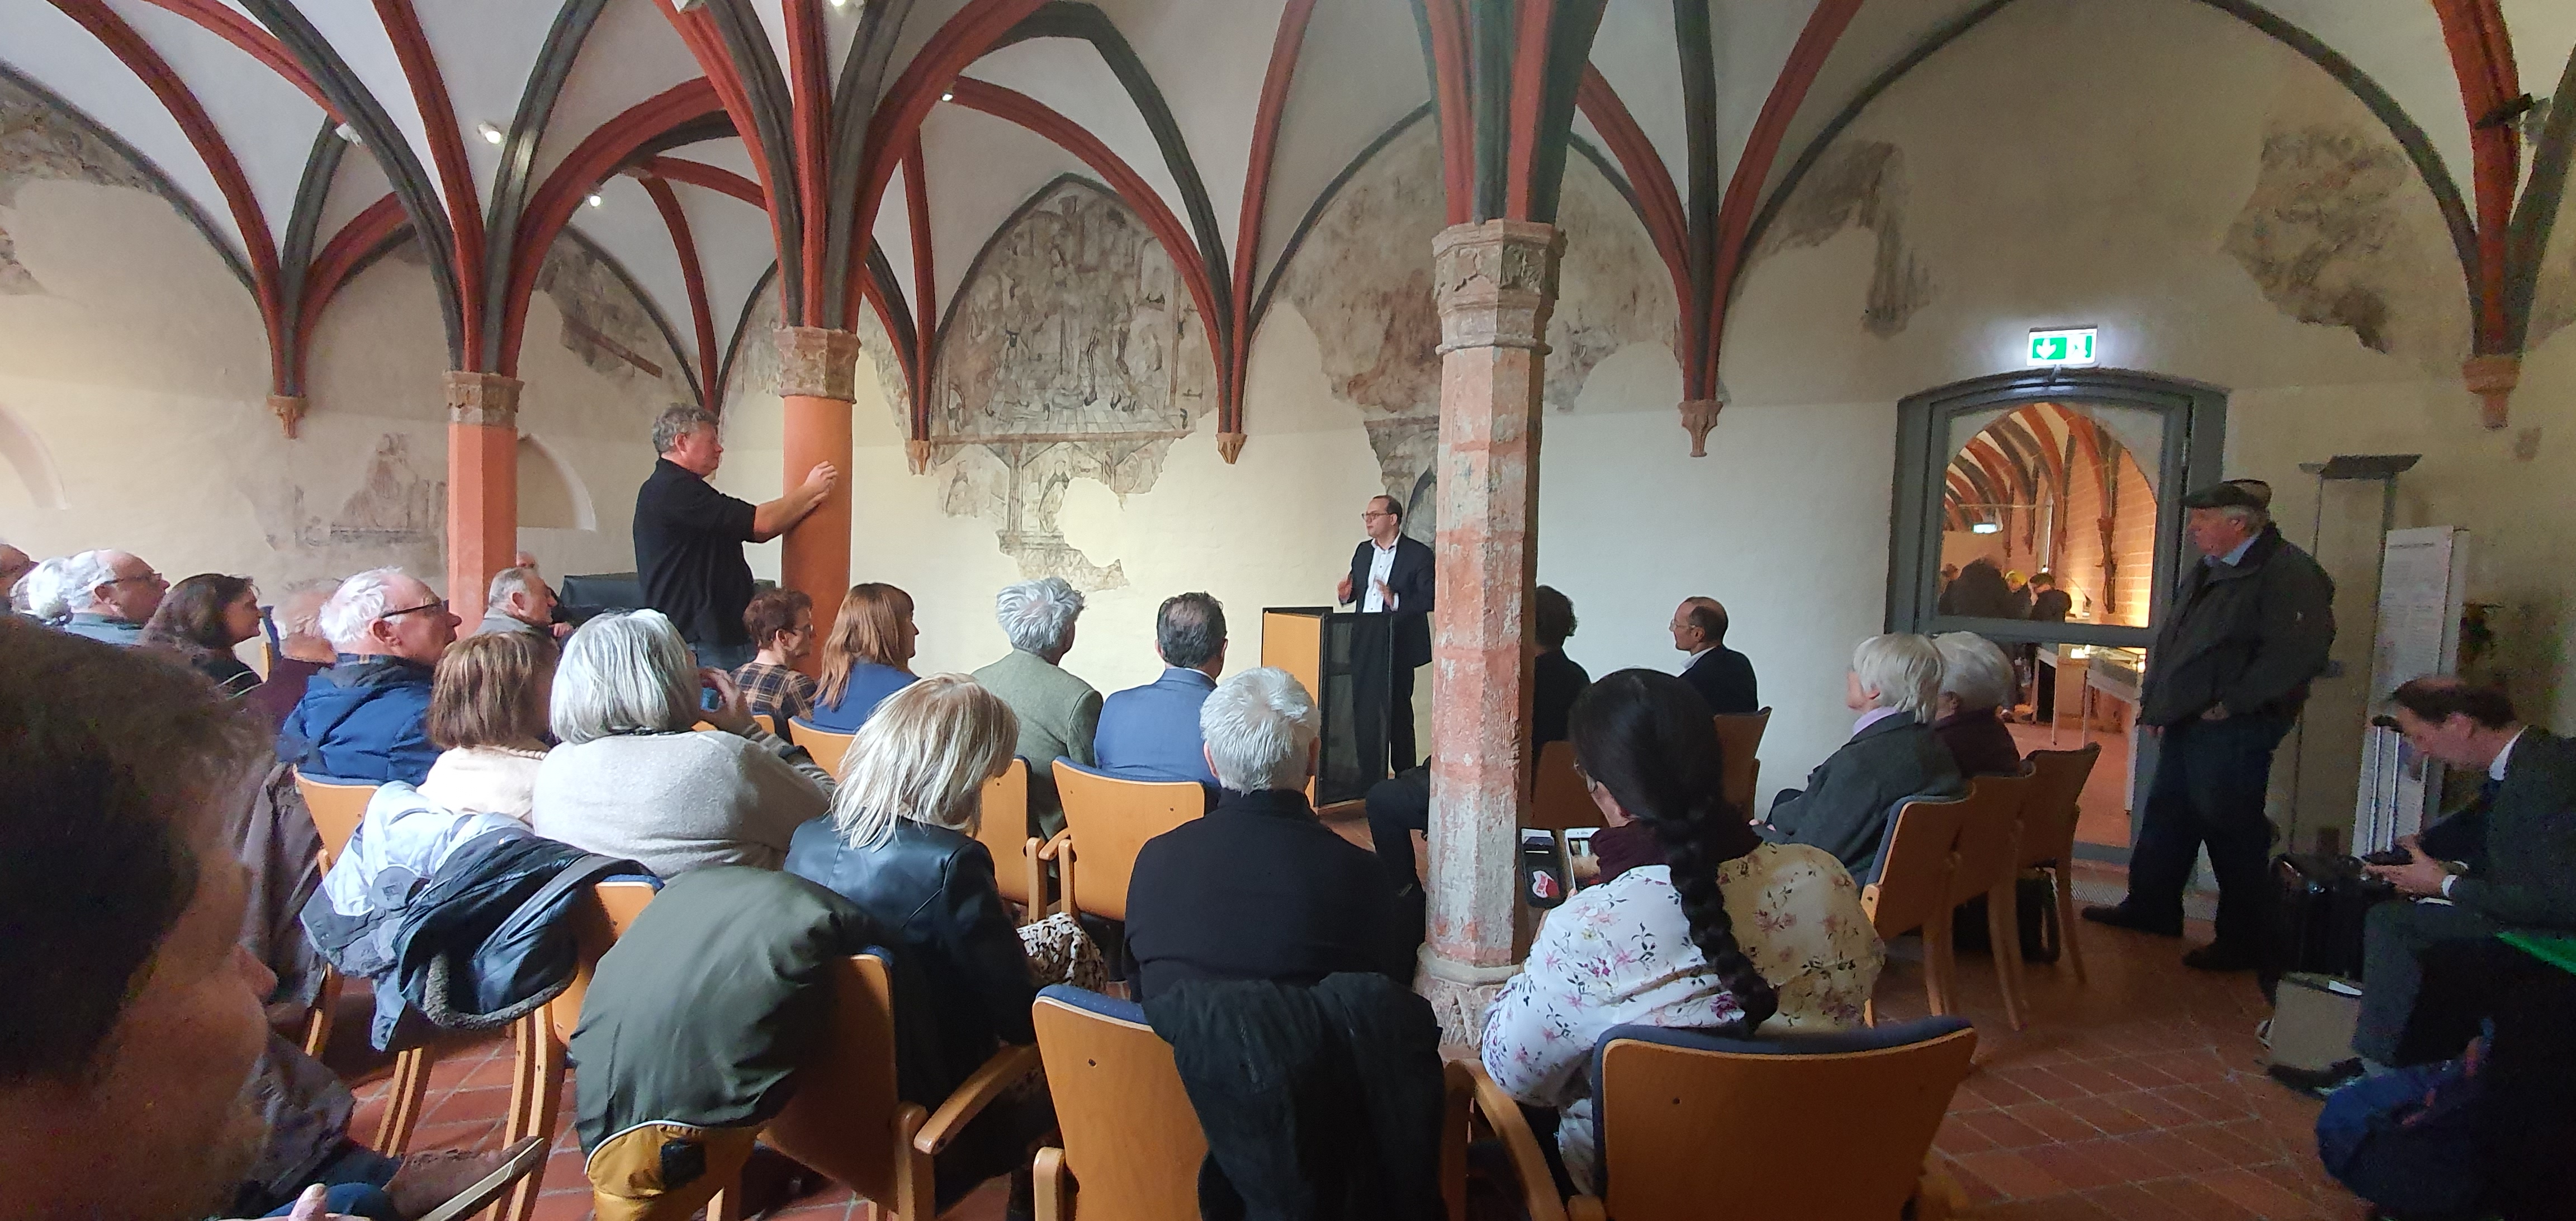 Minderheiten-Ausstellung im Kloster Prenzlau